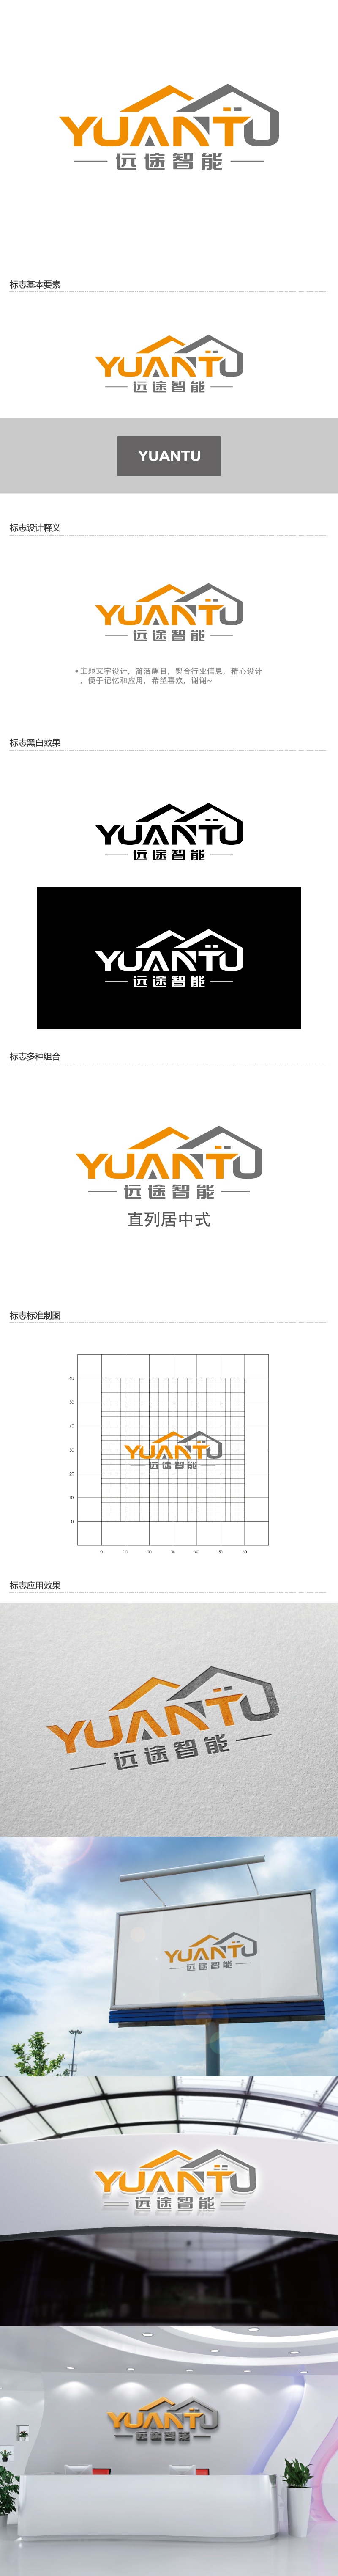 王涛的江苏远途智能装配房有限公司logo设计